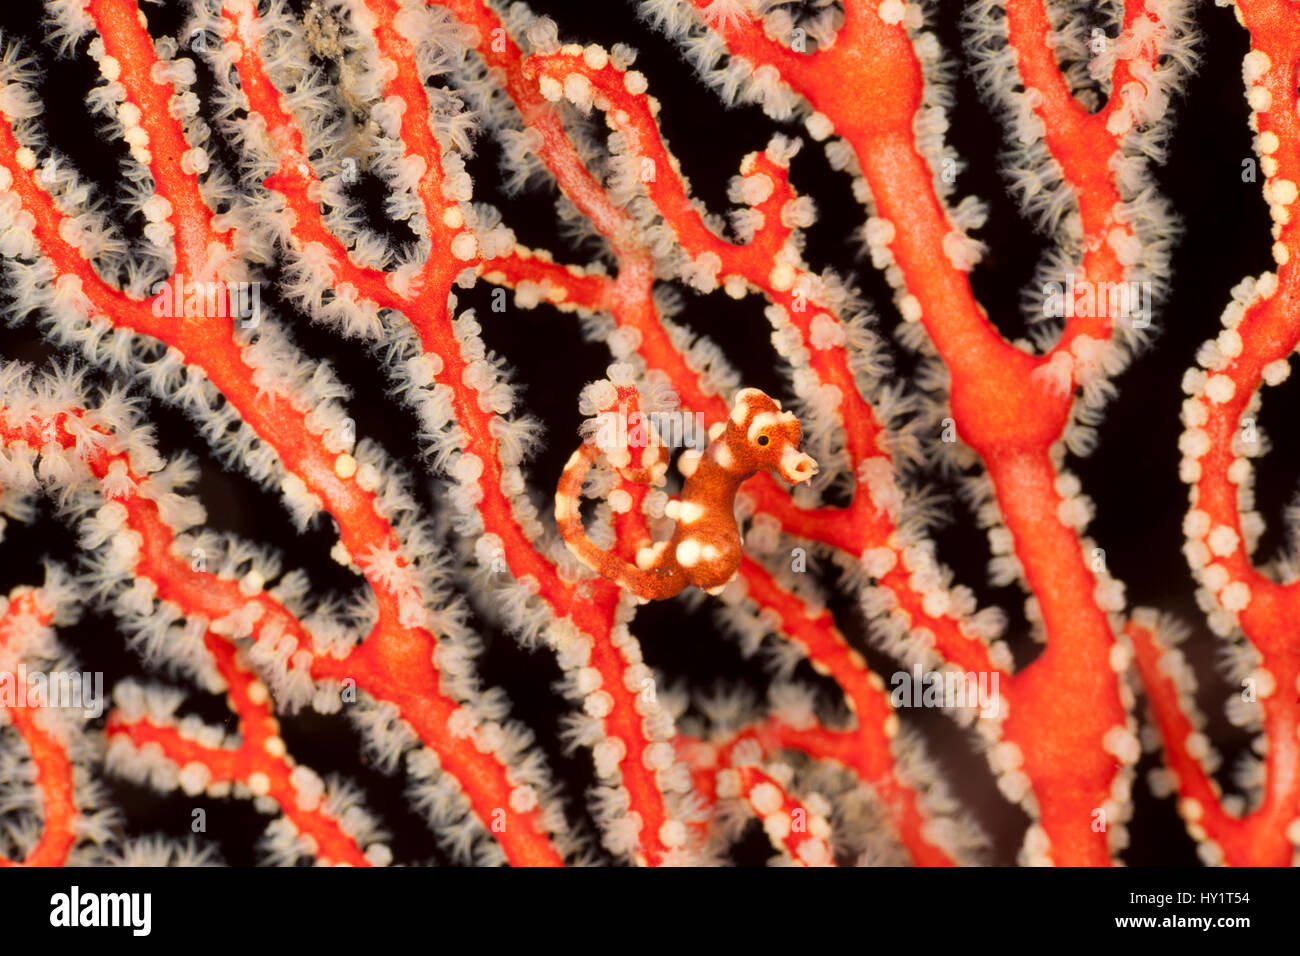 Di Denise cavalluccio marino pigmeo (Hippocampus denise) nella sua fan corallo. Misool Raja Ampat, Papua occidentale, in Indonesia. Foto Stock